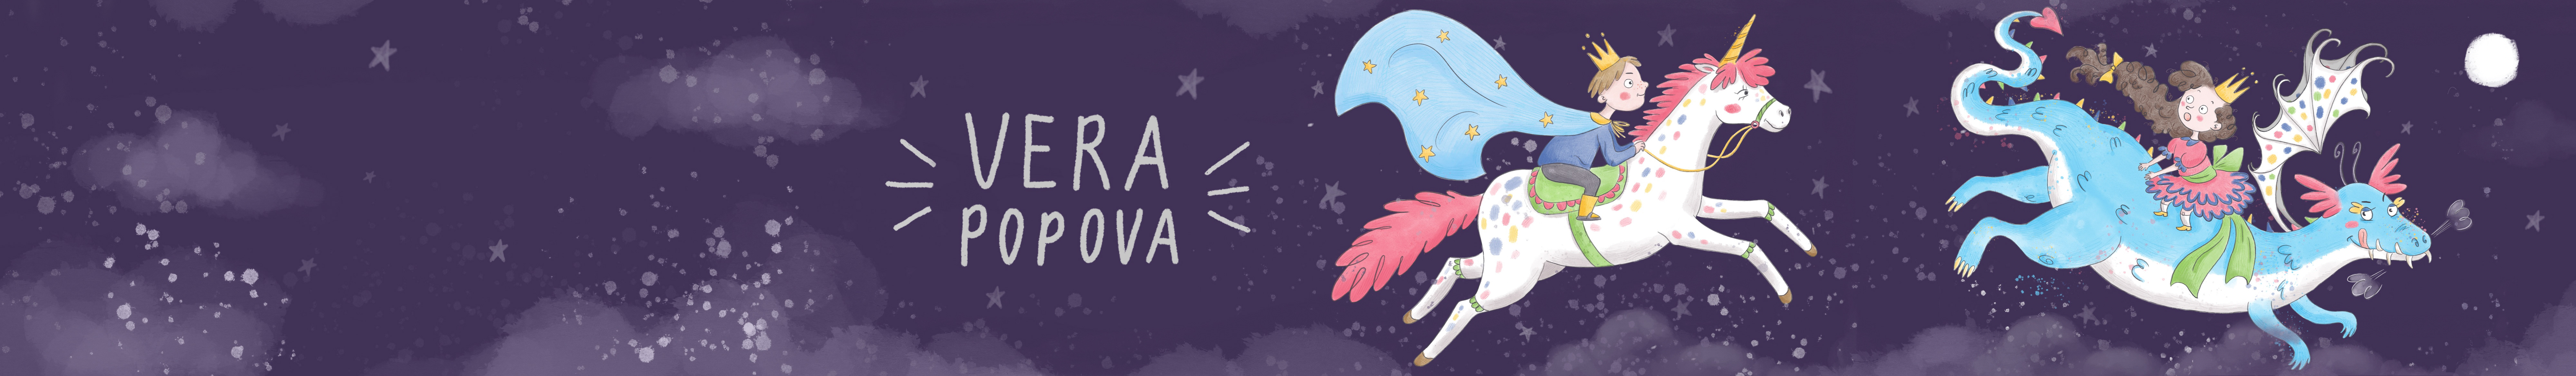 Profil-Banner von Vera Popova